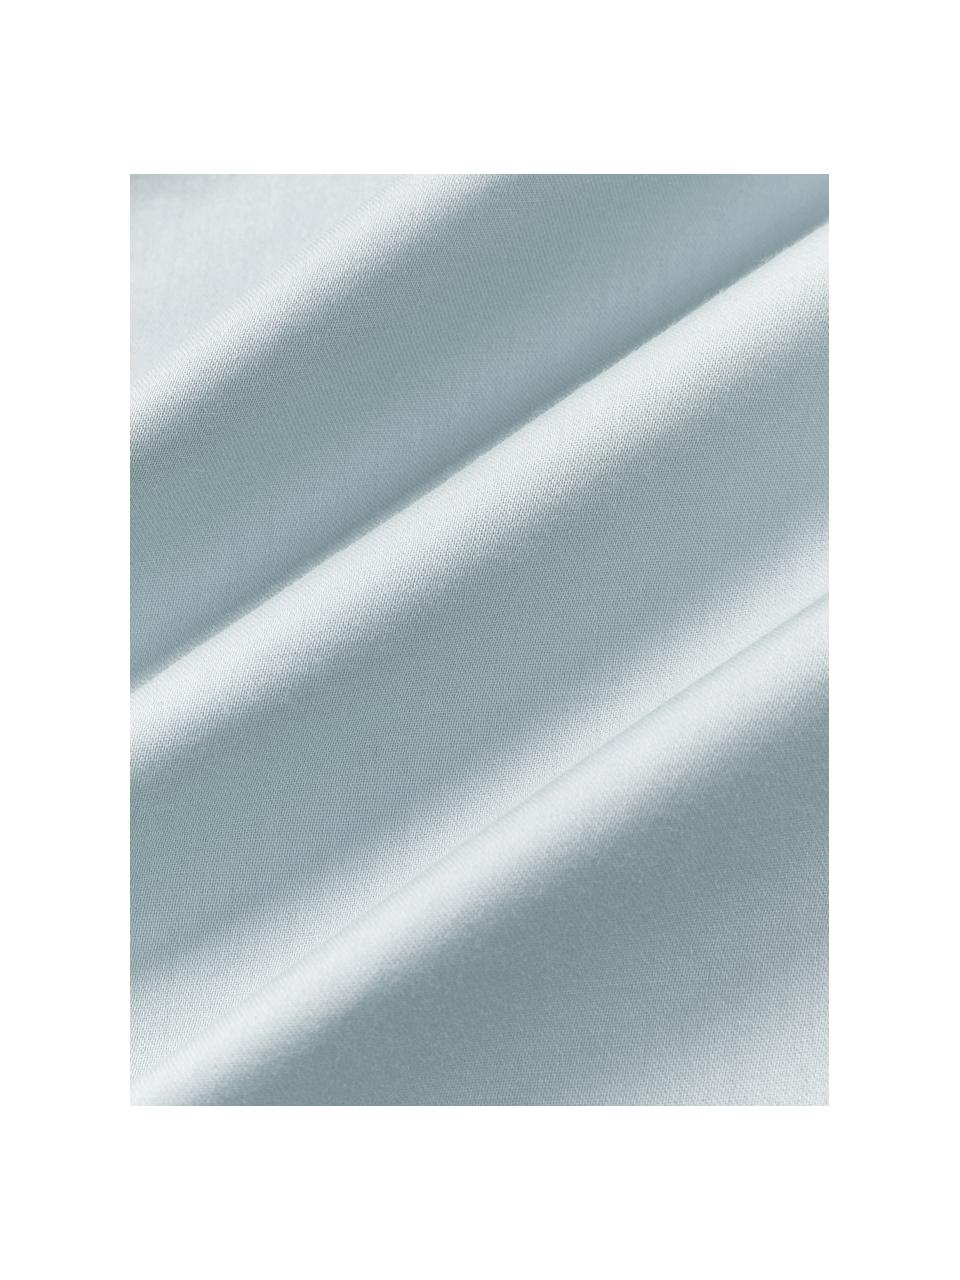 Copripiumino in raso di cotone Comfort, Azzurro, Larg. 200 x Lung. 200 cm